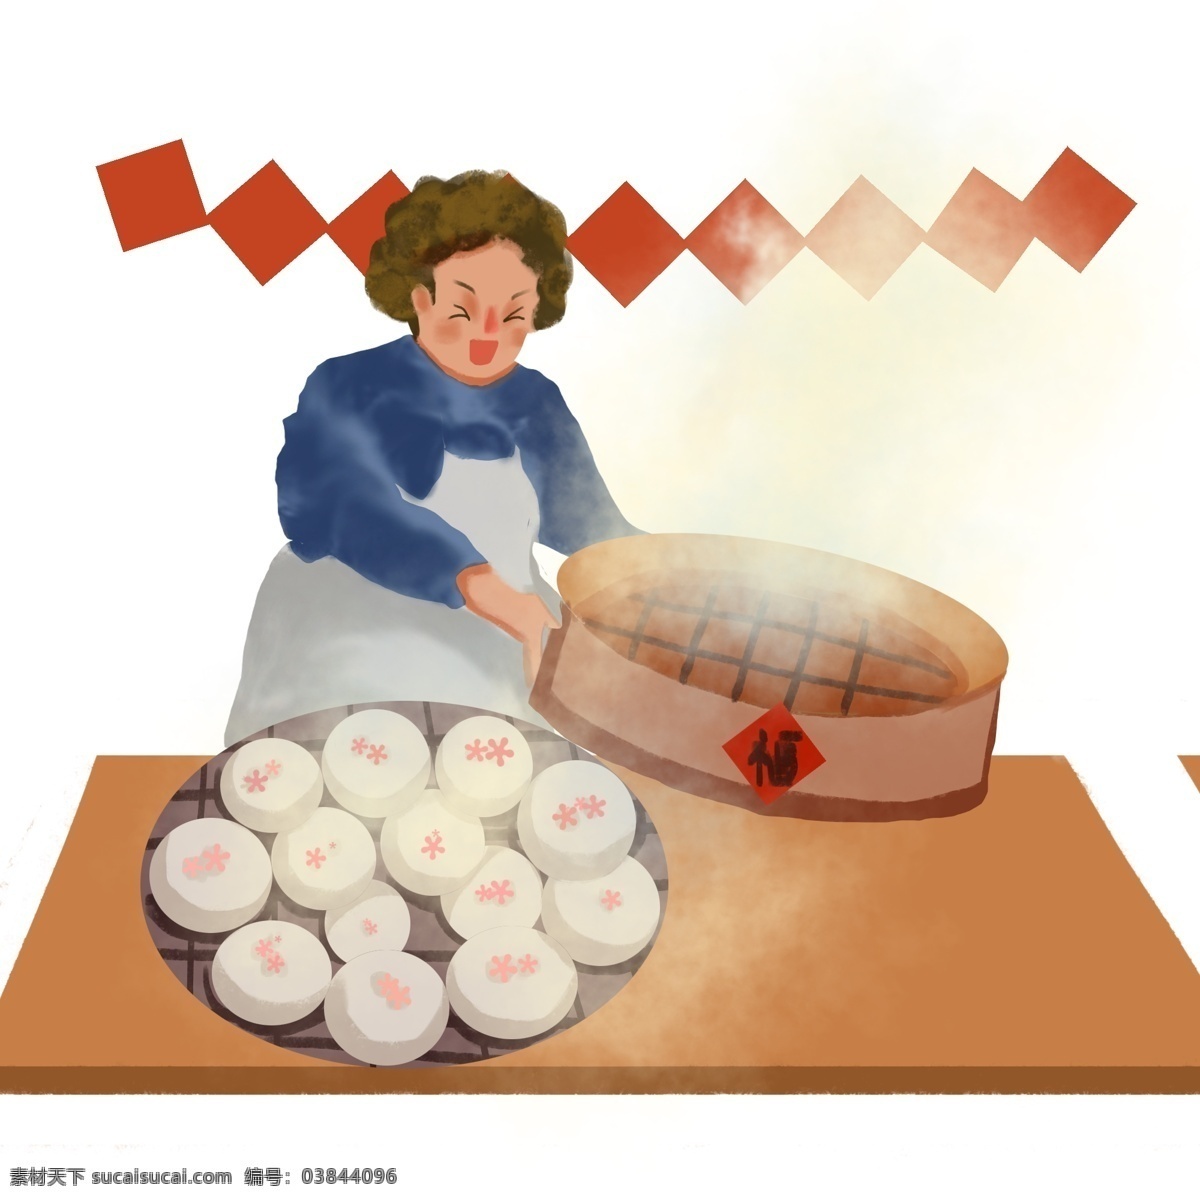 大年 蒸 包子 插画 过大年 贺新年 春节 红色的福字 美味的食物 慈祥的妈妈 劳动的妈妈 木桌子